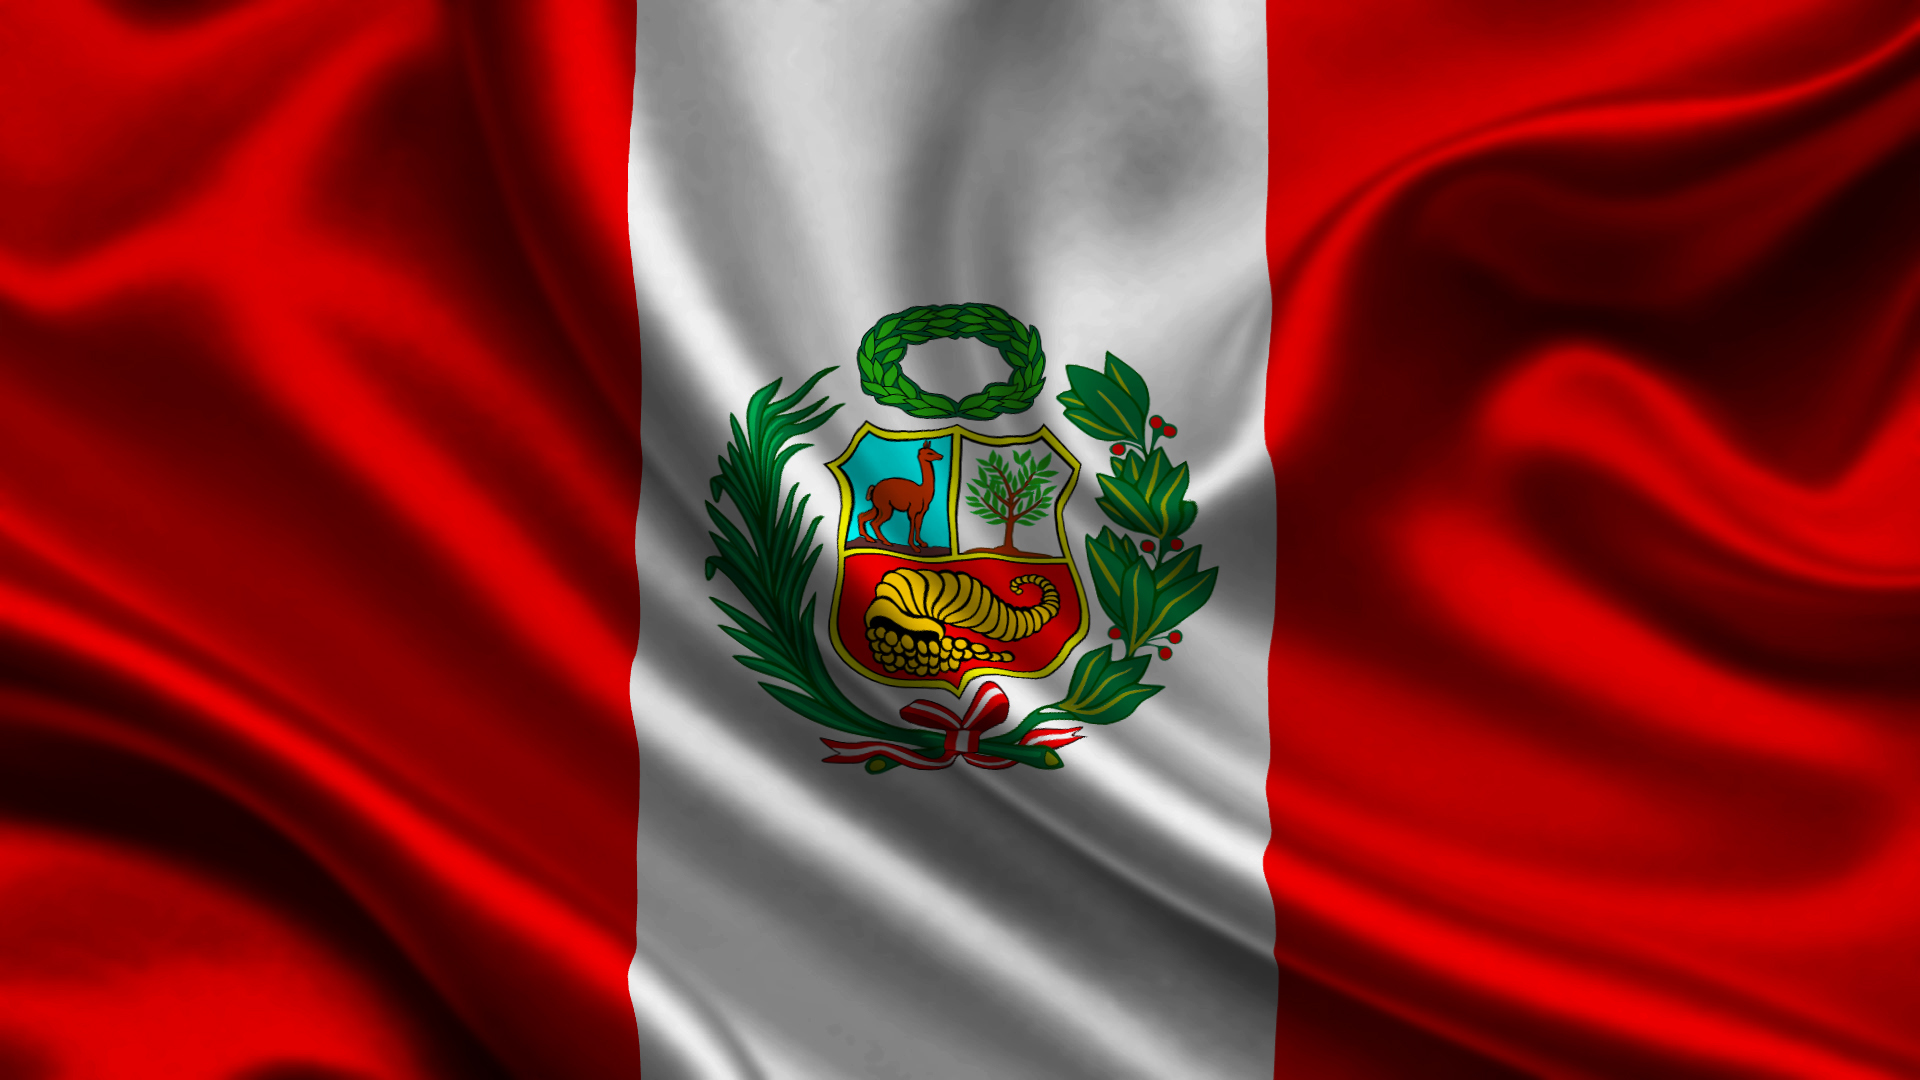 Скачать обои Перуанский Флаг на телефон бесплатно